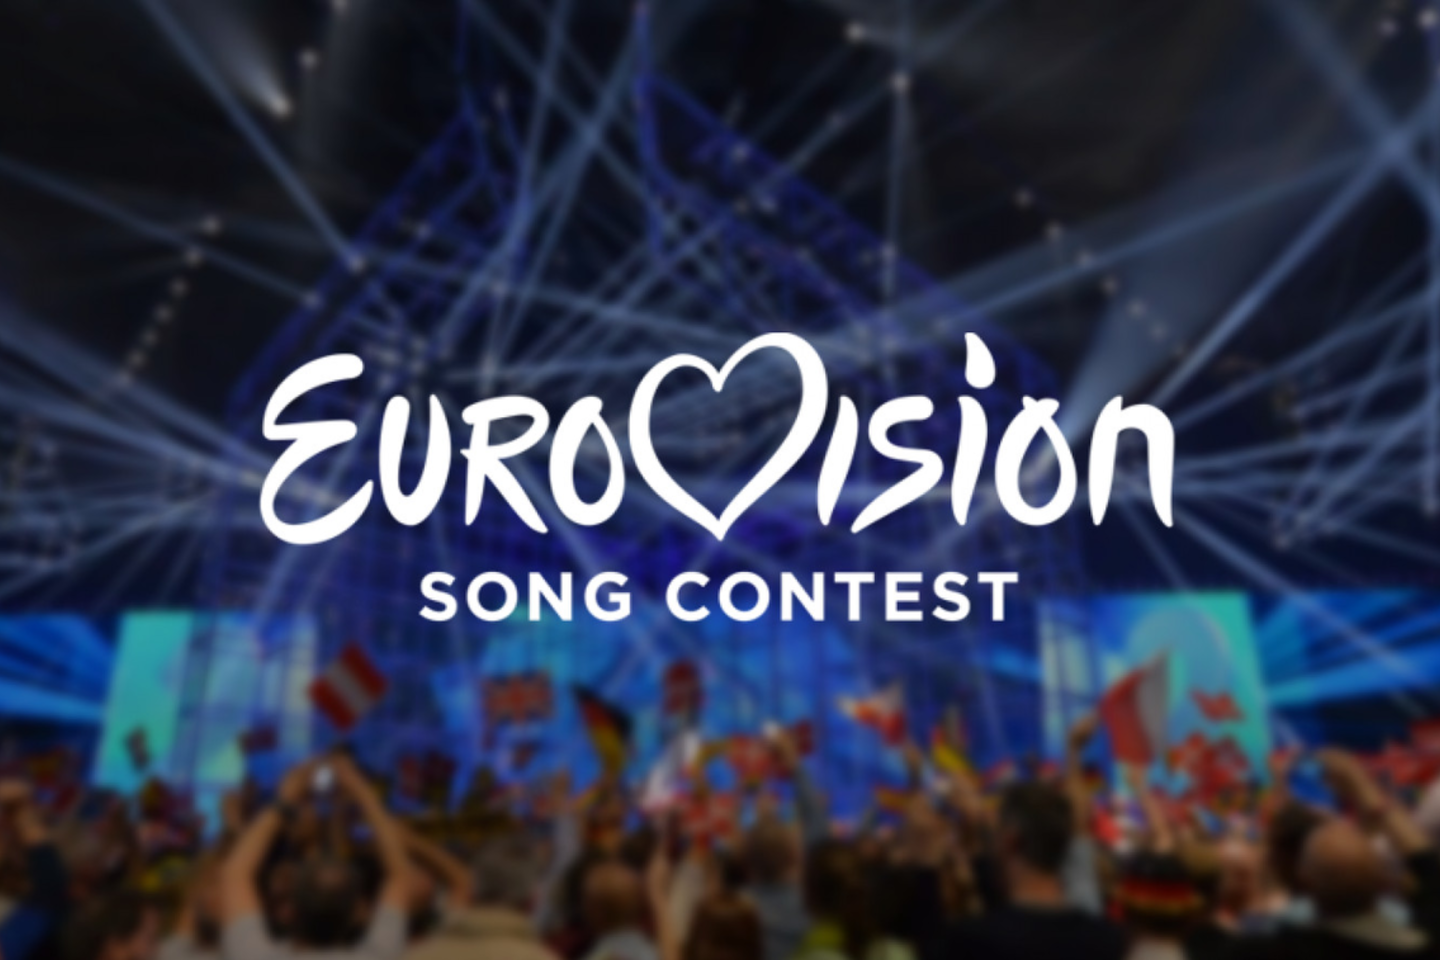 „Eurovizijos“ organizatoriai pažėrė daugiau detalių apie neskaidriai balsavusias šalis.<br>eurovision.tv nuotr.